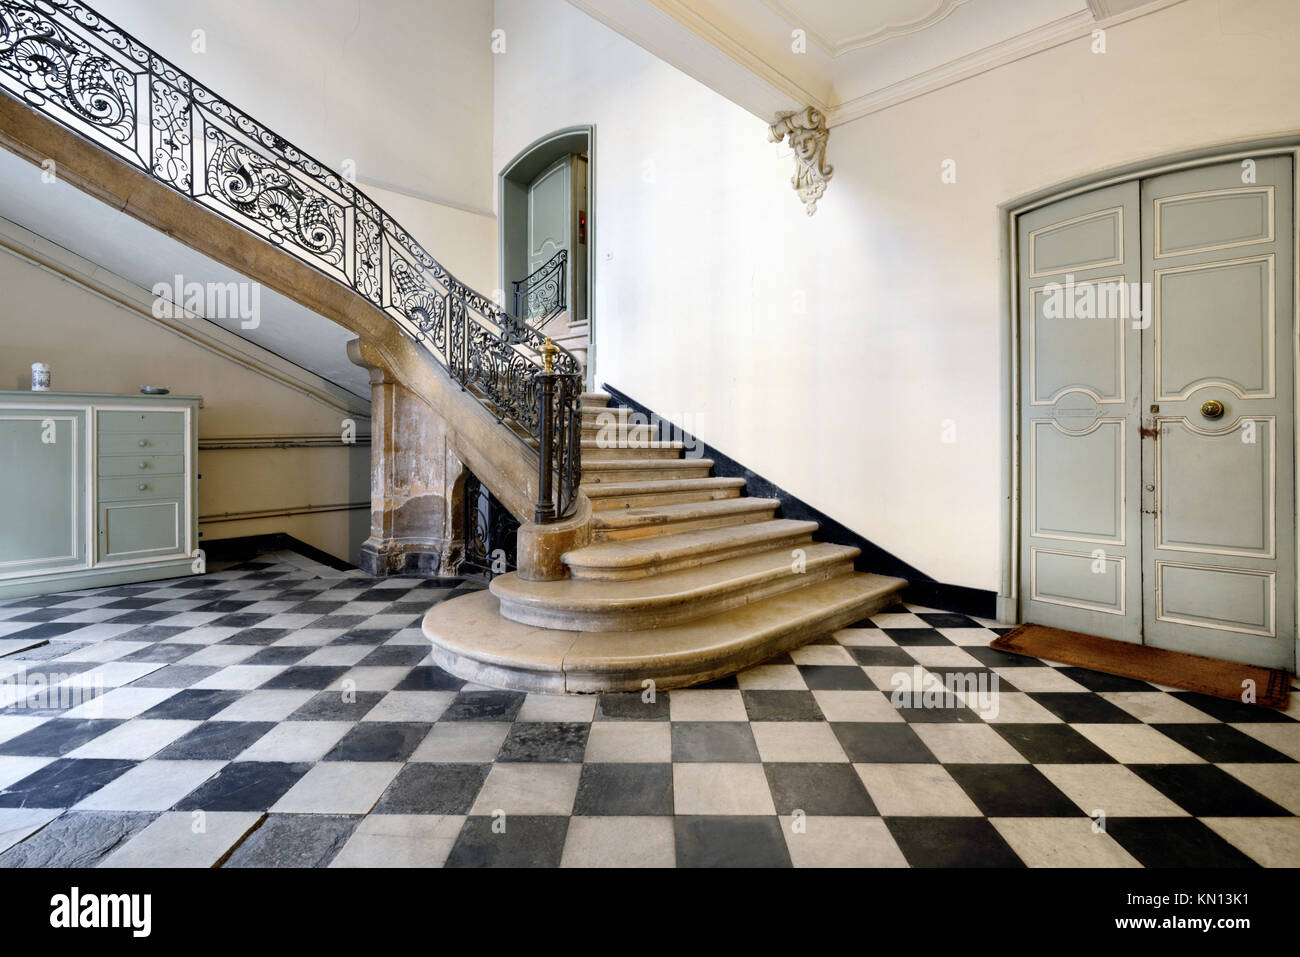 Escalera interior de la histórica casa de ciudad, el Hotel de Thomas (1739), también conocido como Hotel de Panisse-Passis, Aix-en-Provence, Provenza, Francia Foto de stock